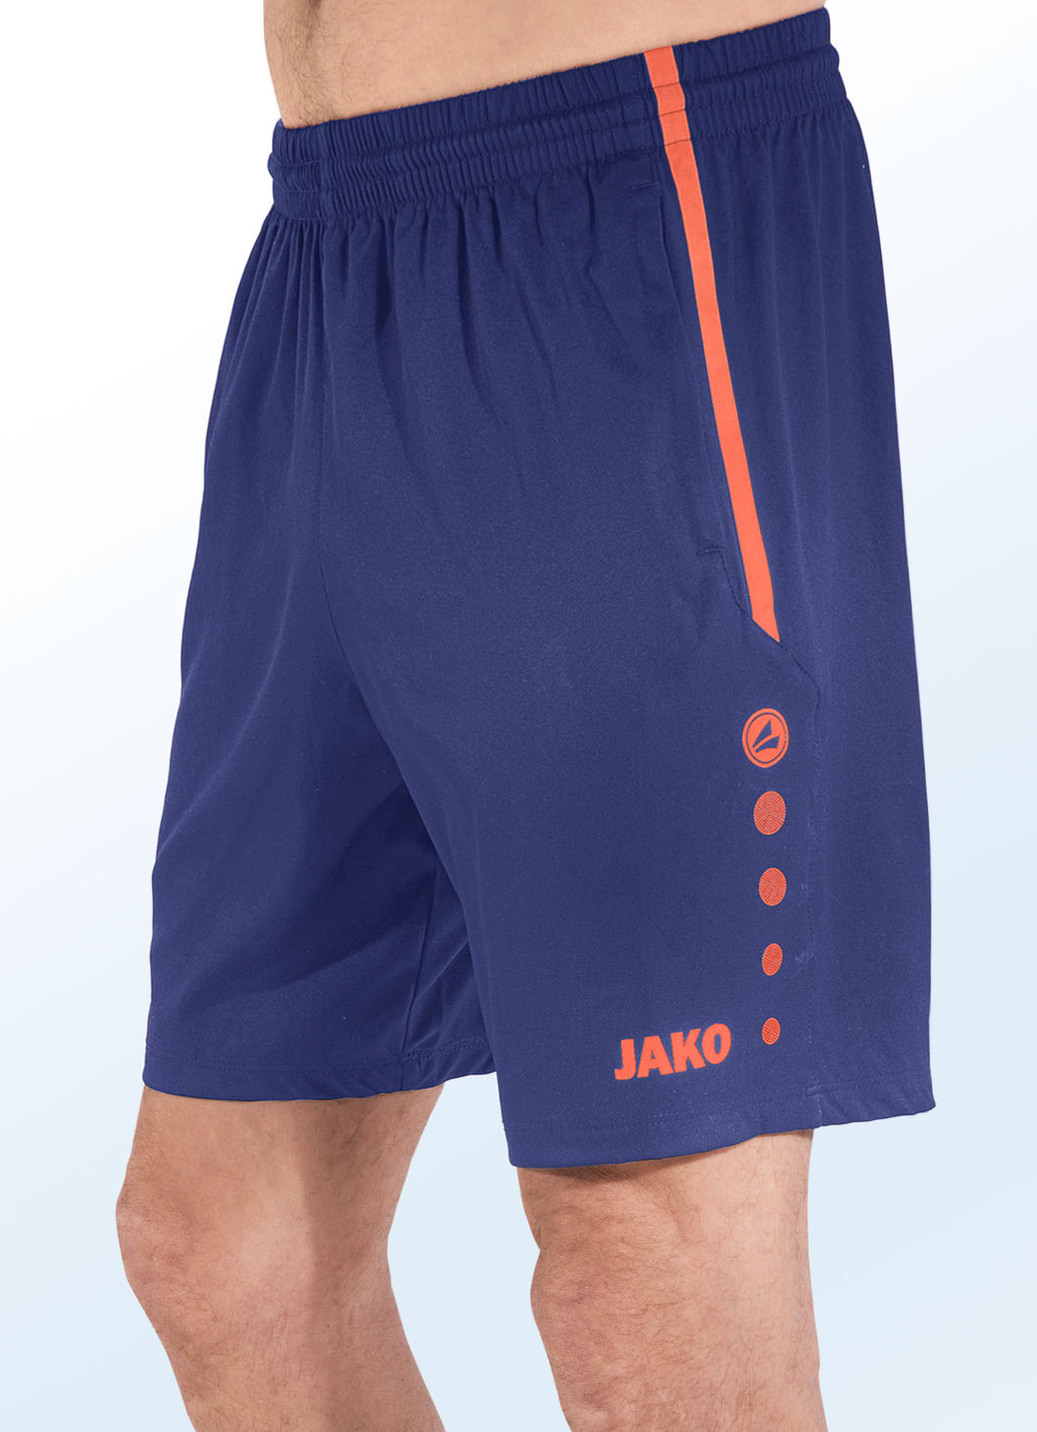 Shorts von "Jako" in 4 Farben, Größe L (50), Marine-Orange von Jako